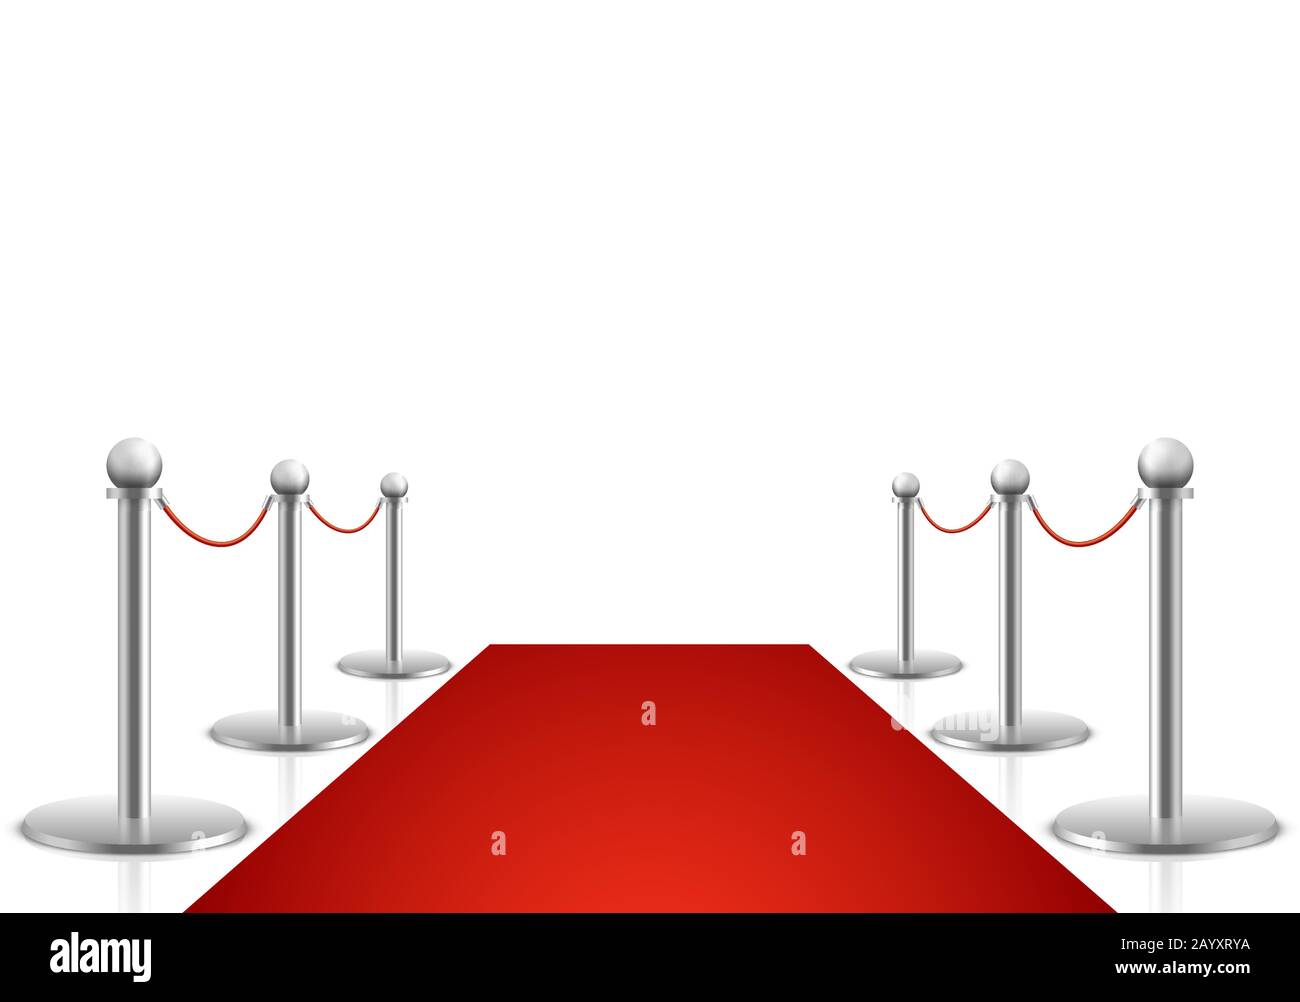 Vektorgrafiken mit rotem Teppich. Auszeichnungen zeigen Hintergrund mit Teppichpfad, Eingang zur Eventpremiere auf rotem Teppich Stock Vektor